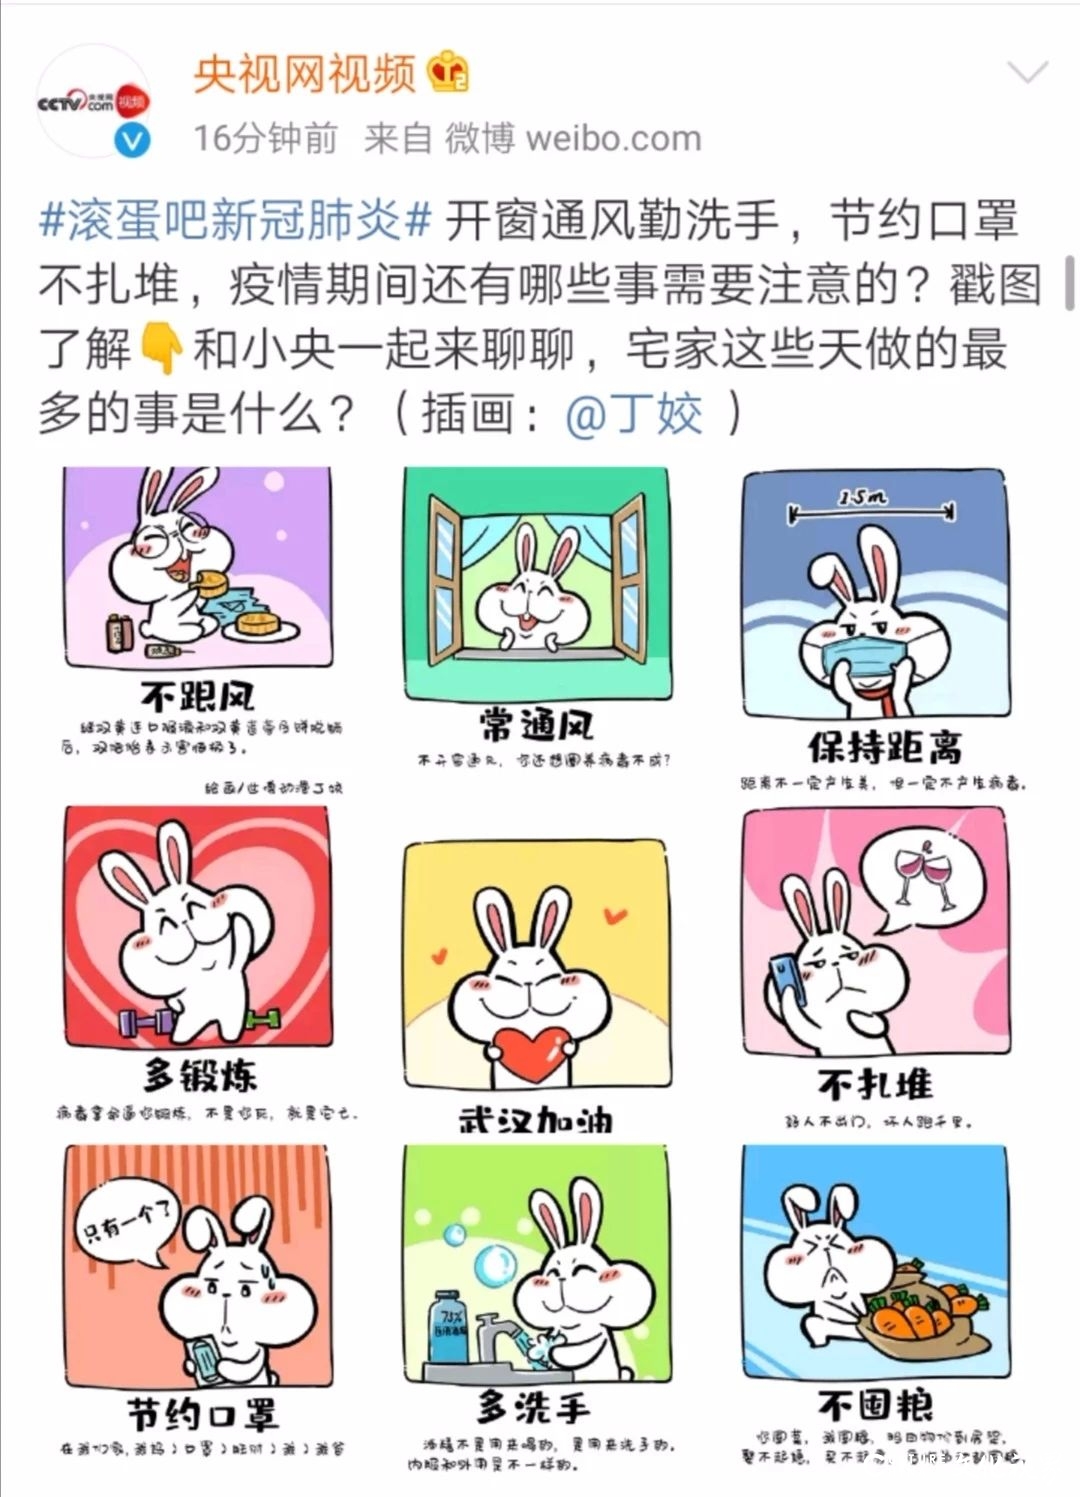 世博动漫丁姣创作的“防疫小贴士漫画”被央视网视频、直播中国转发